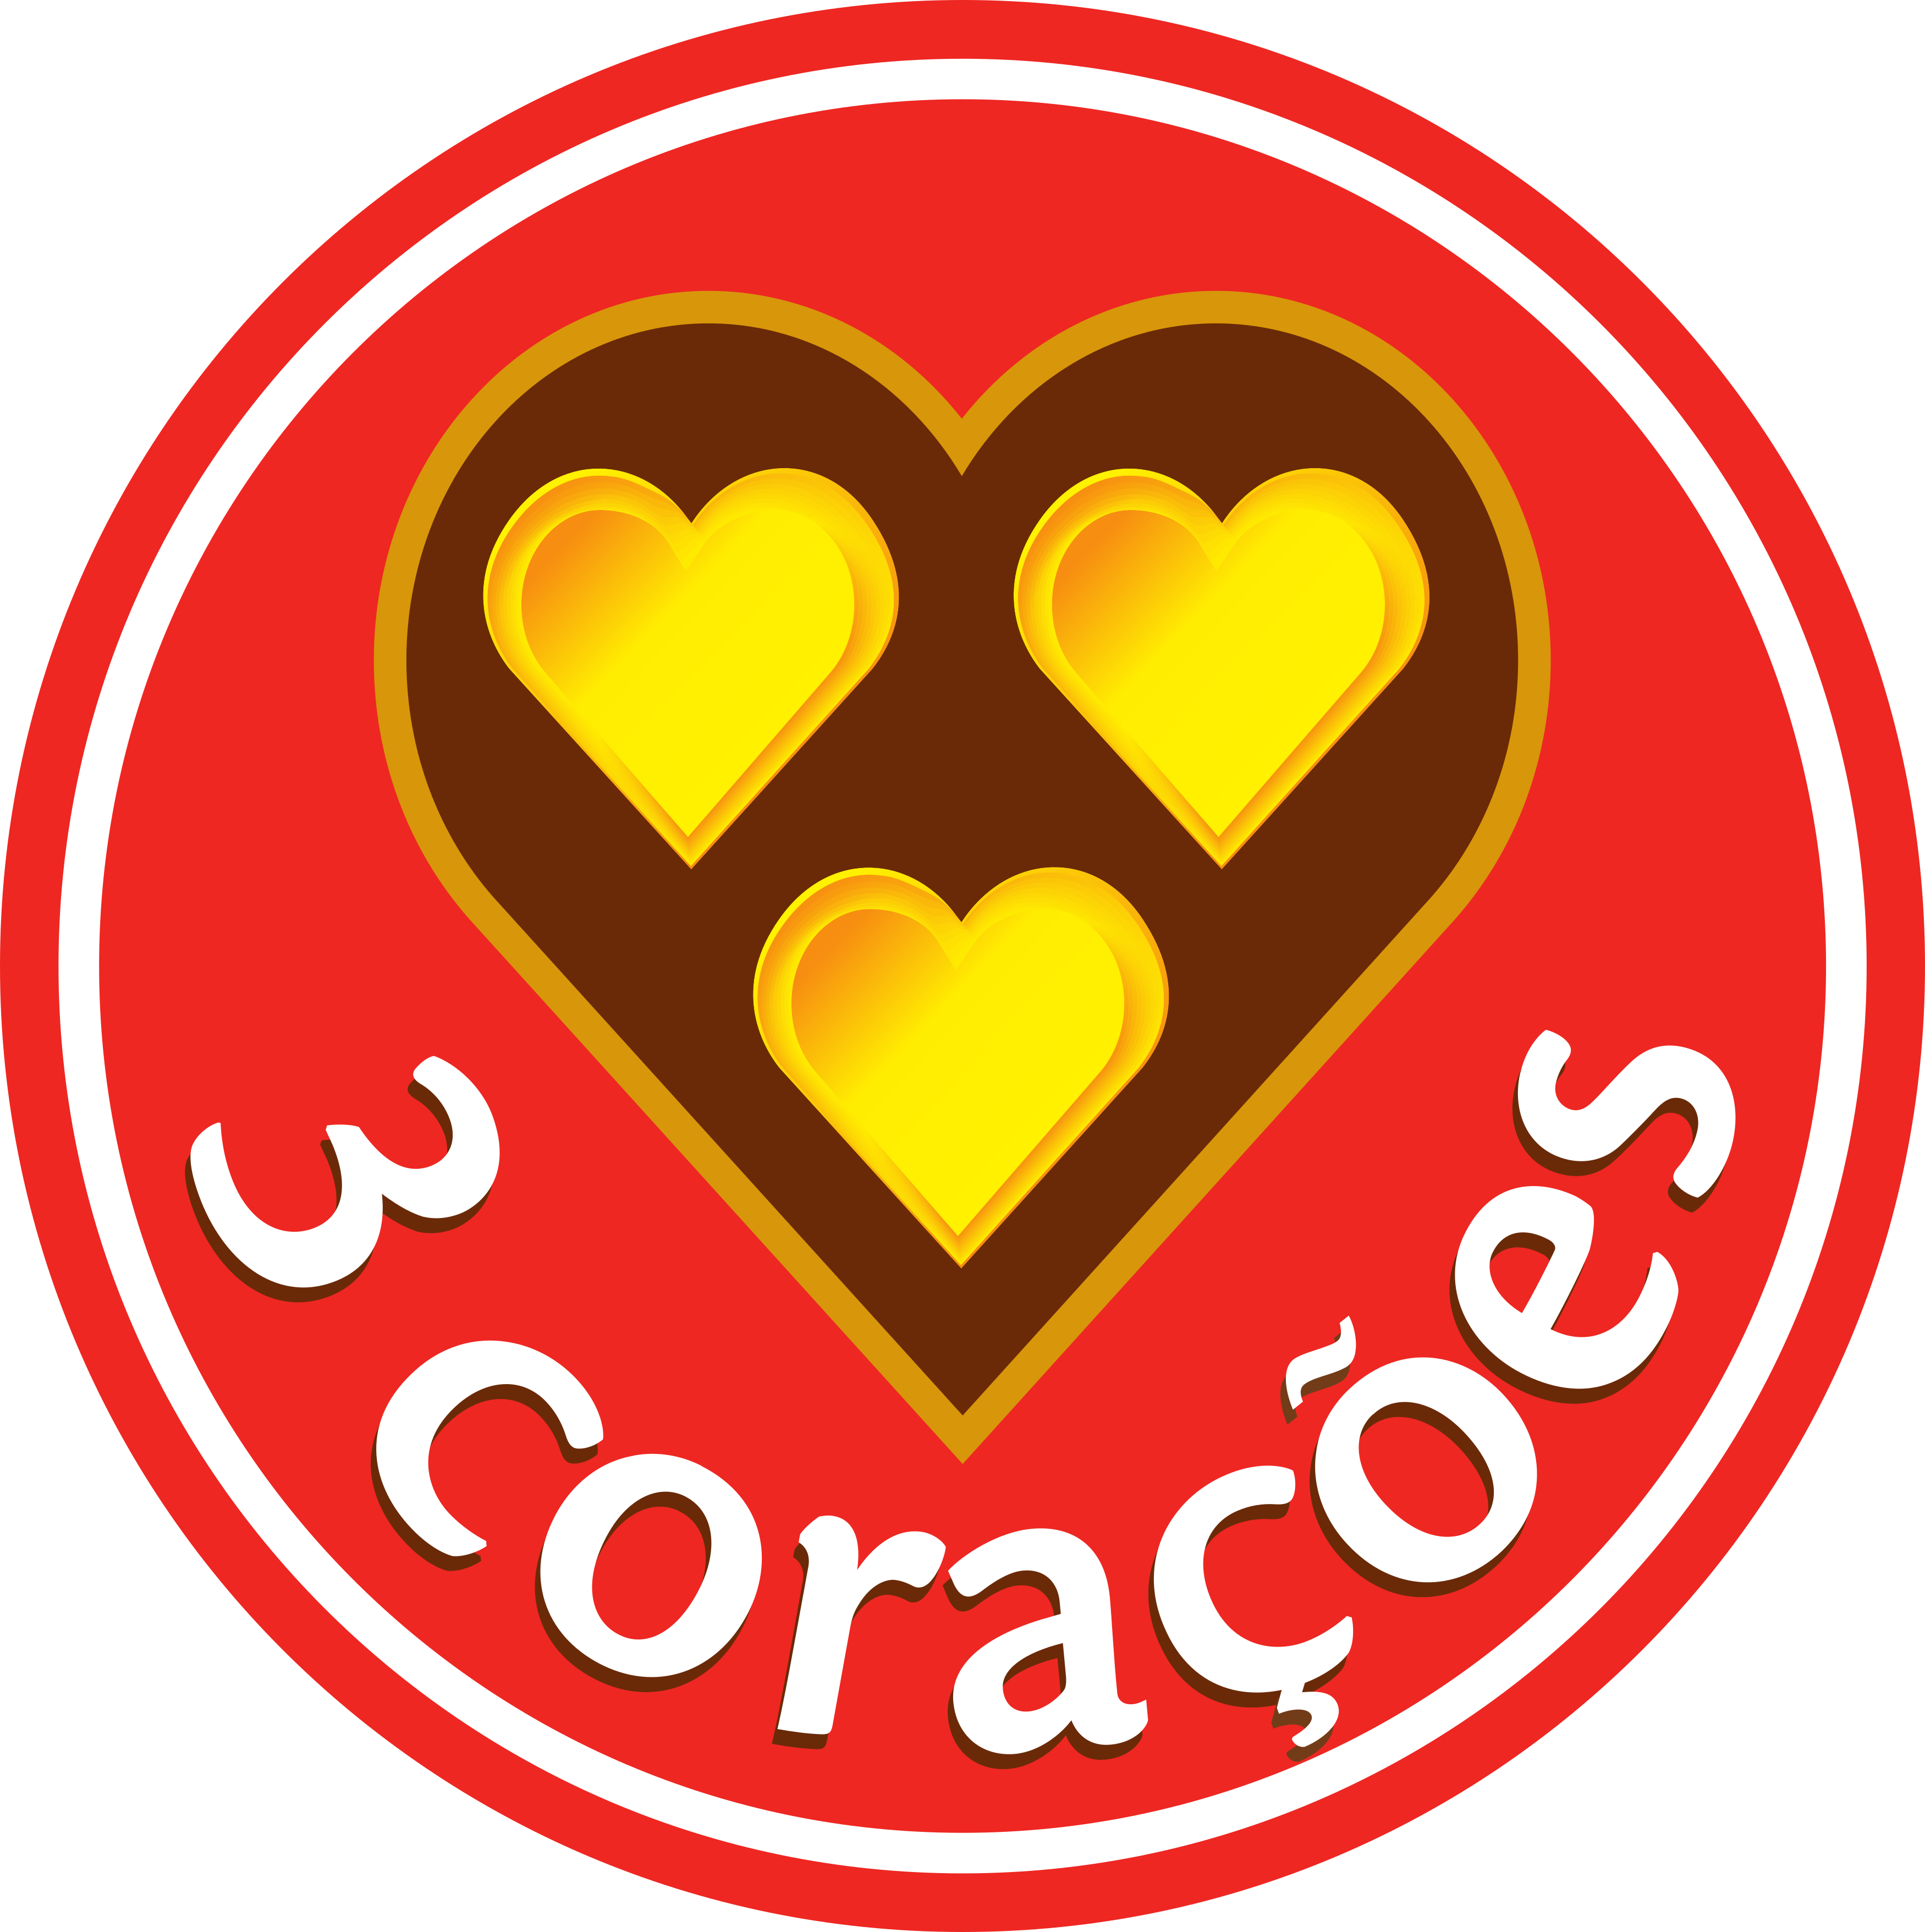 Café 3 Corações Logo.